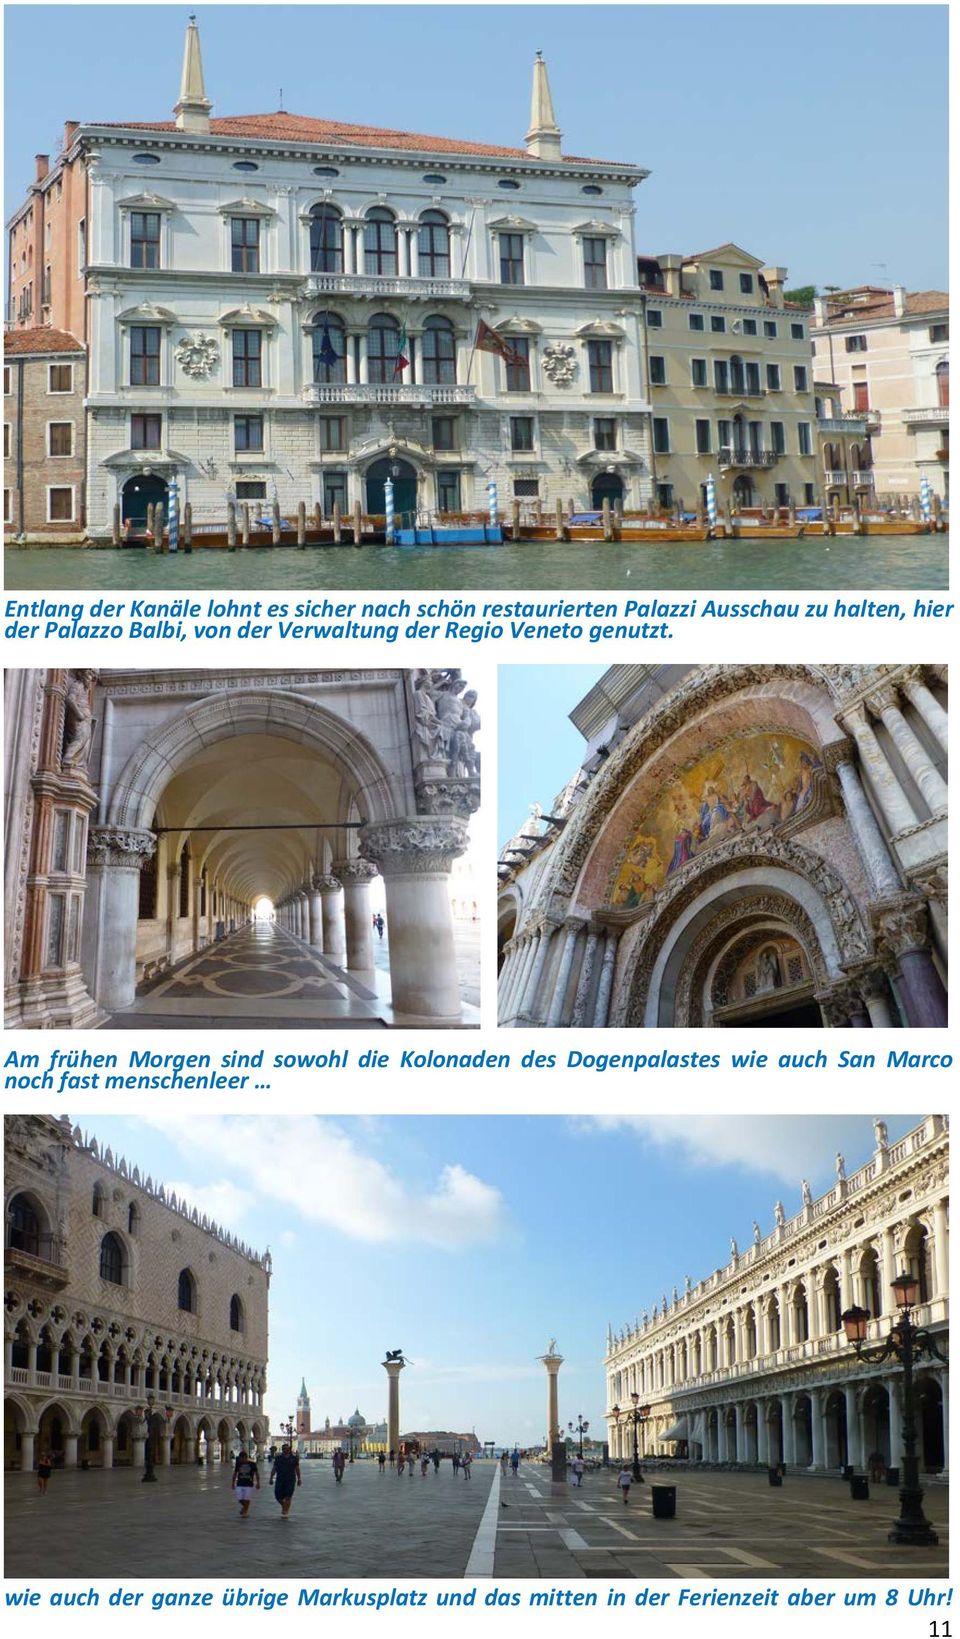 Am frühen Morgen sind sowohl die Kolonaden des Dogenpalastes wie auch San Marco noch